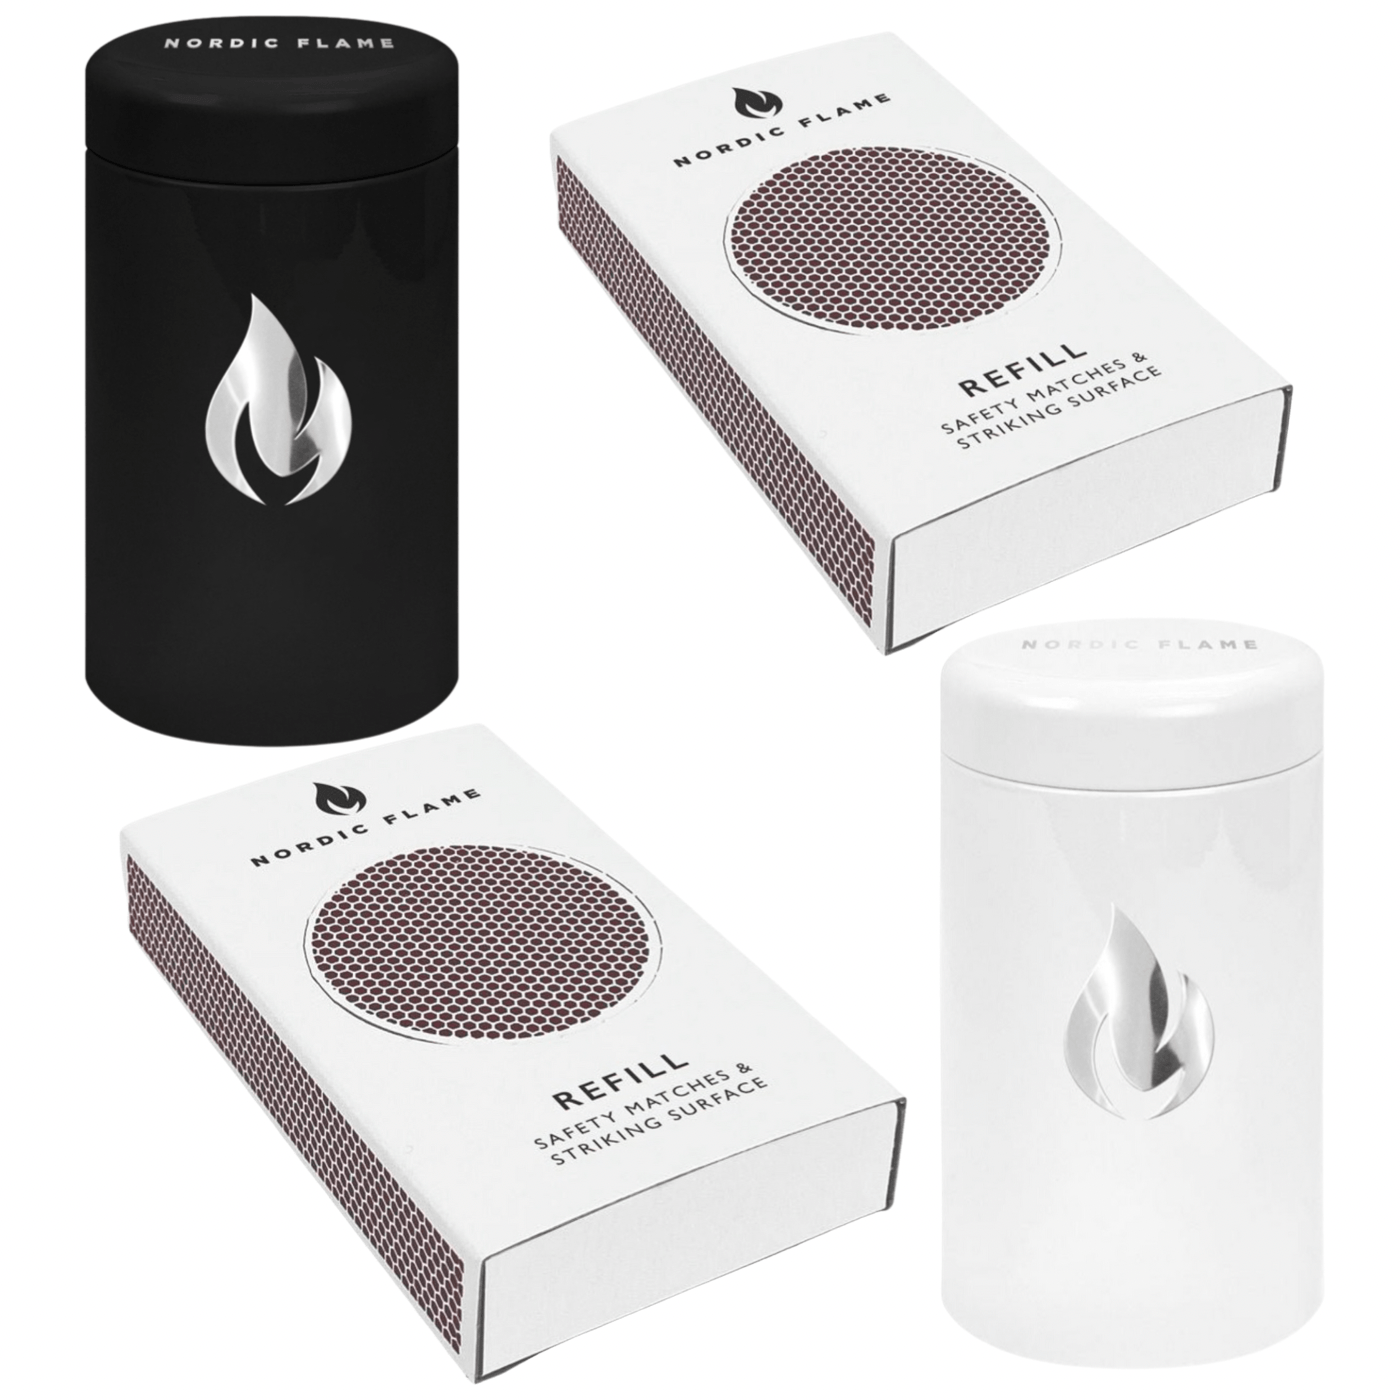 Nordic Flame Match Tube wahlweise in schwarz oder weiß mit ca.100 Stück & eine Nachfüllpackung ca.50 Stück - Bitangel RENOVATE & FURNISH HOMES GmbH